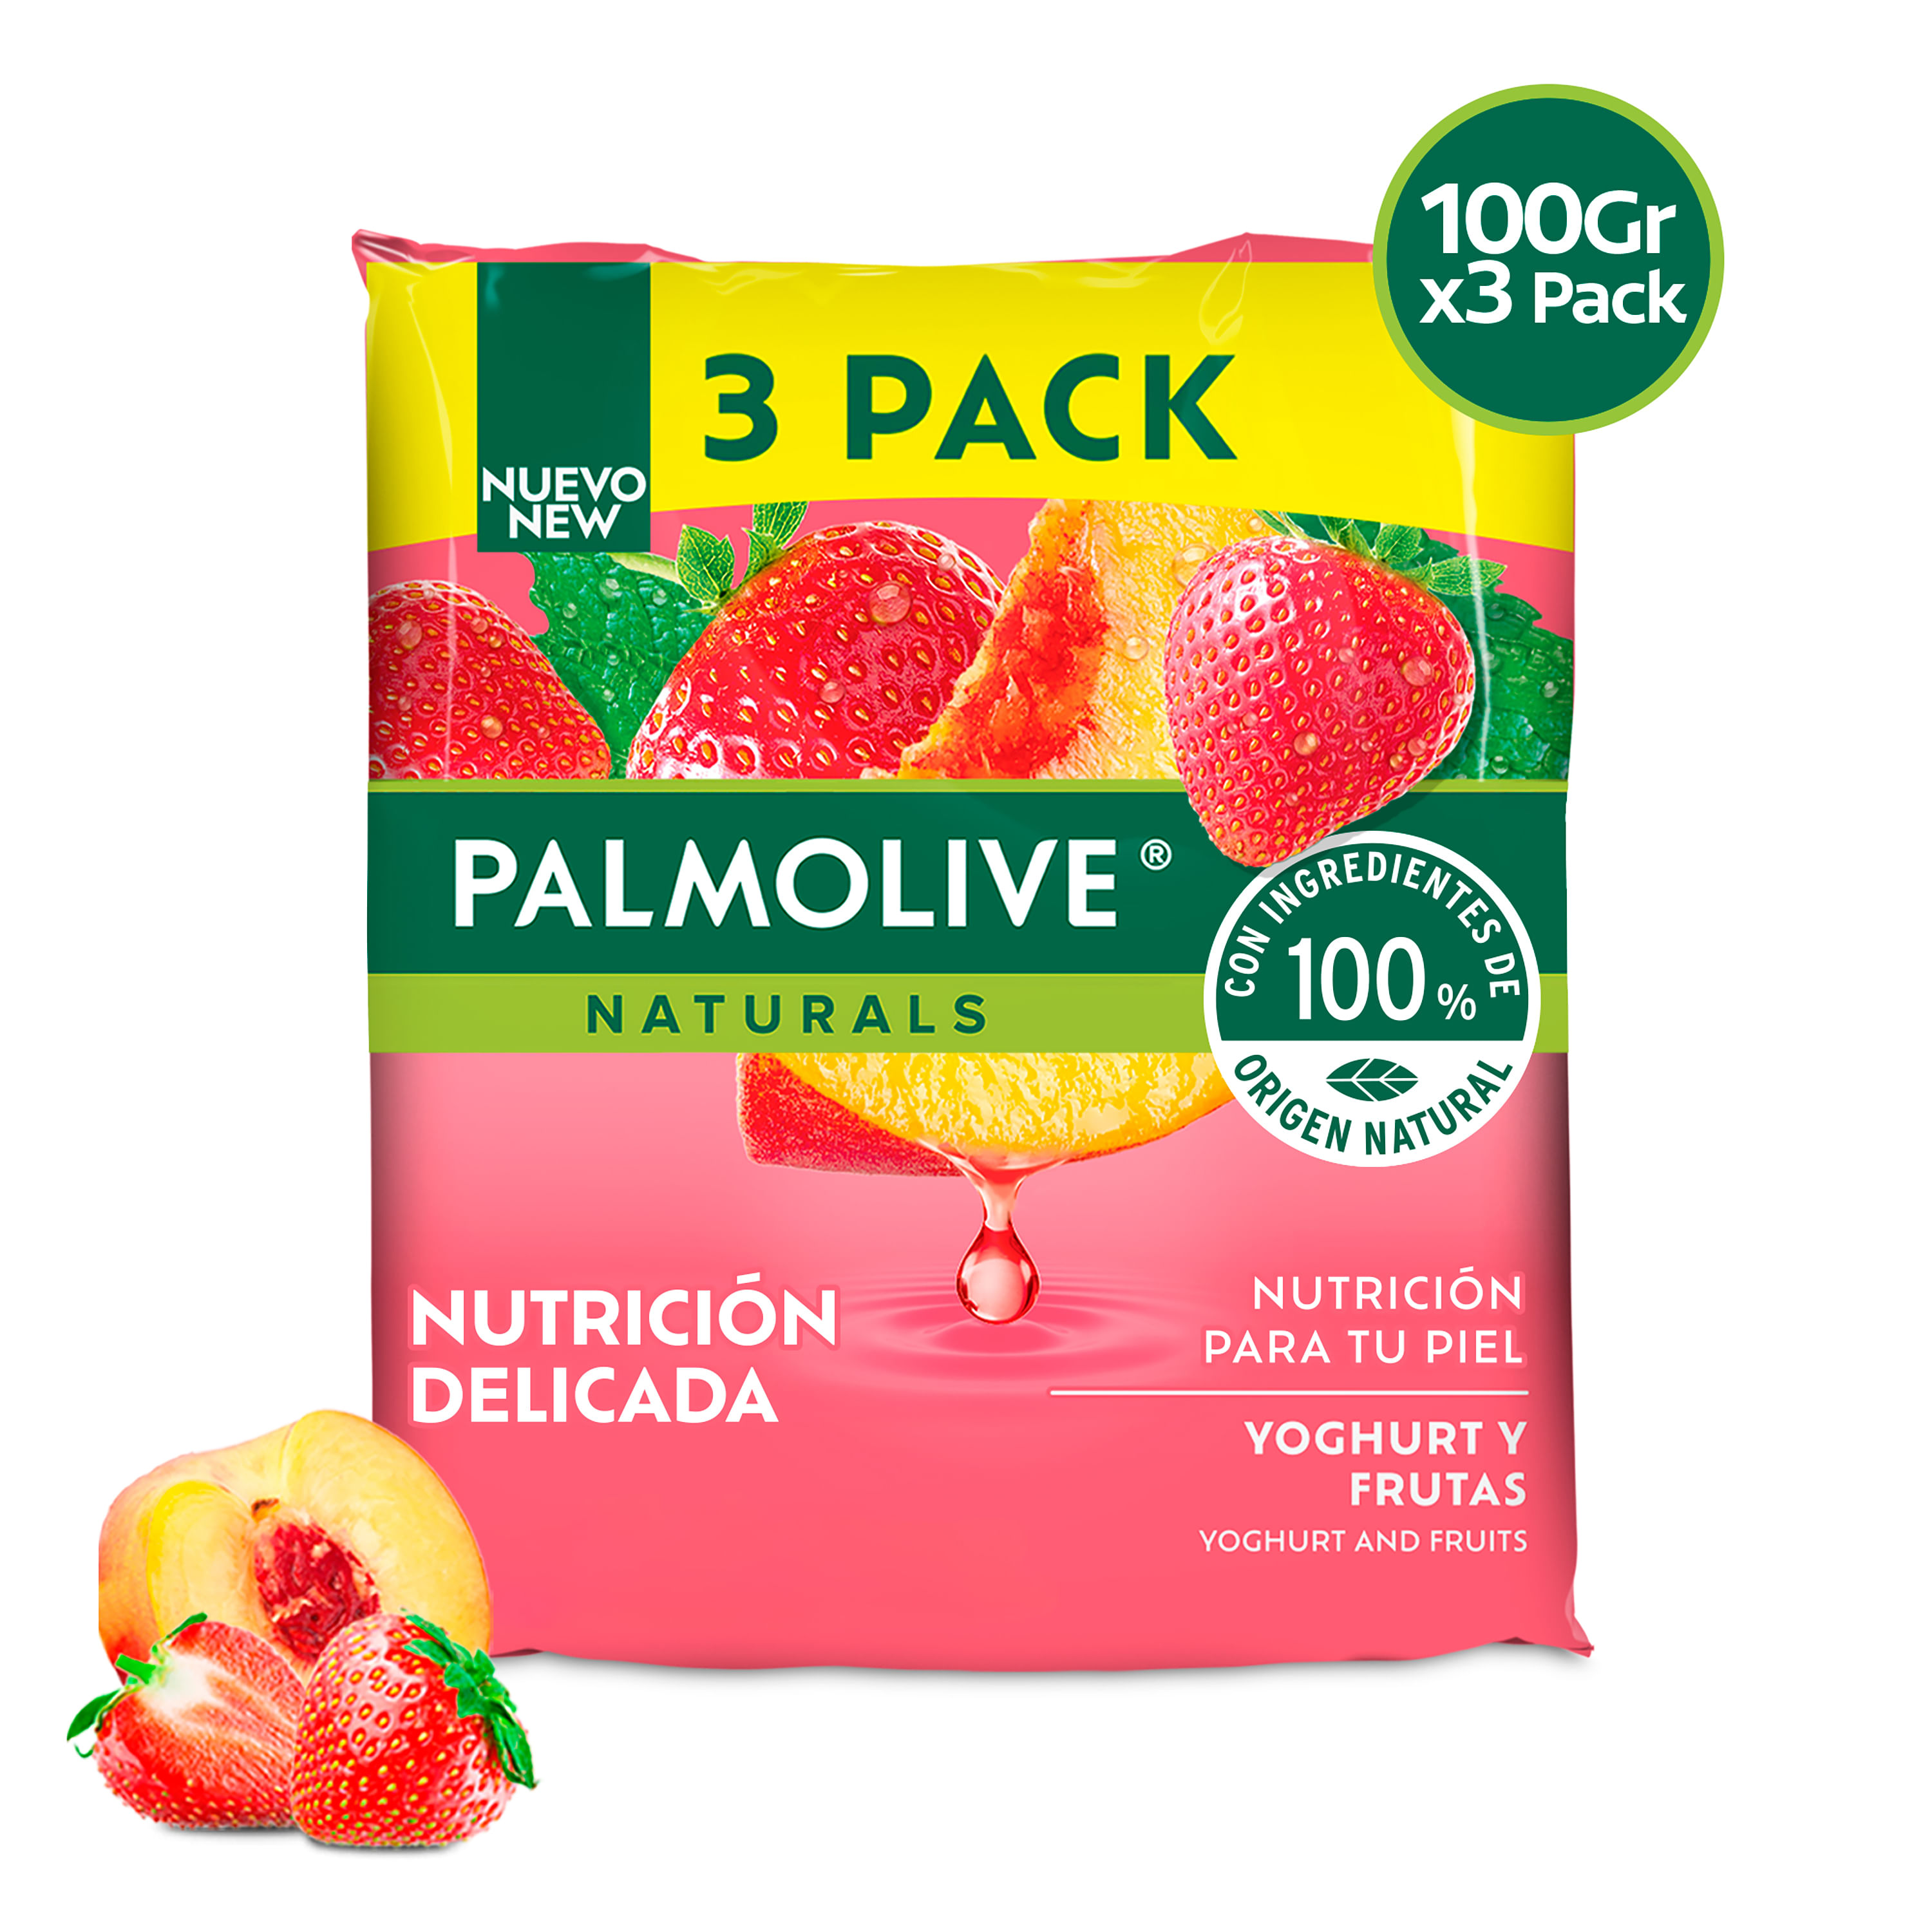 Jab-n-Corporal-Palmolive-Naturals-Yoghurt-y-Frutas-3-Pack-300-g-1-35328